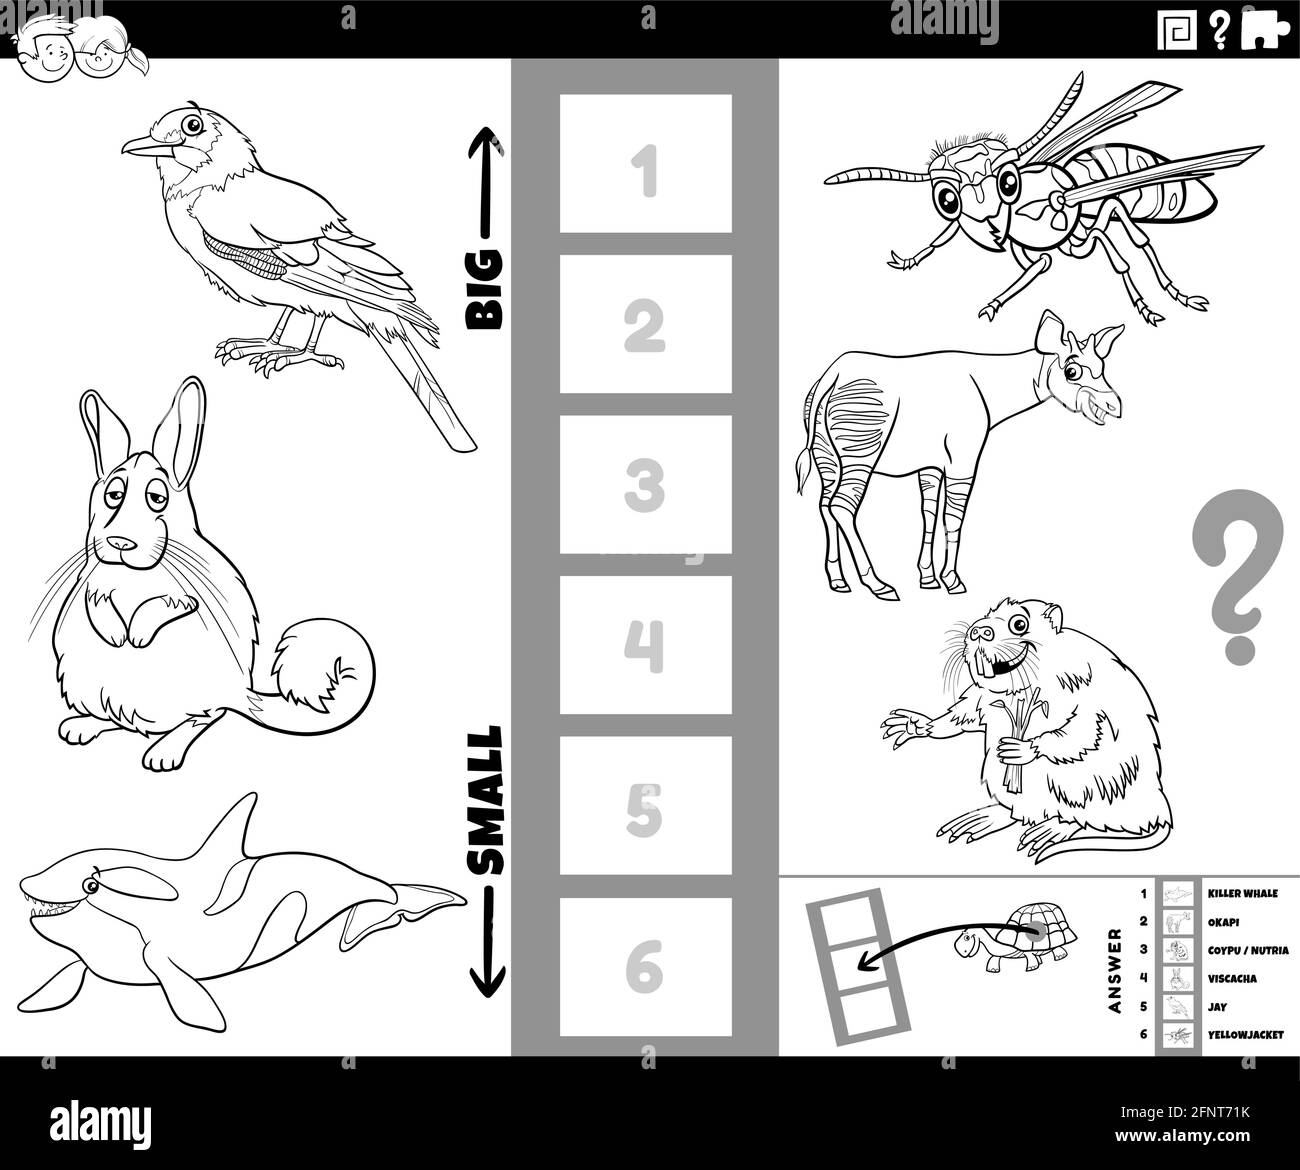 Dessin animé noir et blanc illustration du jeu éducatif de la recherche la plus grande et la plus petite espèce animale avec des personnages comiques coloris pour enfant Illustration de Vecteur